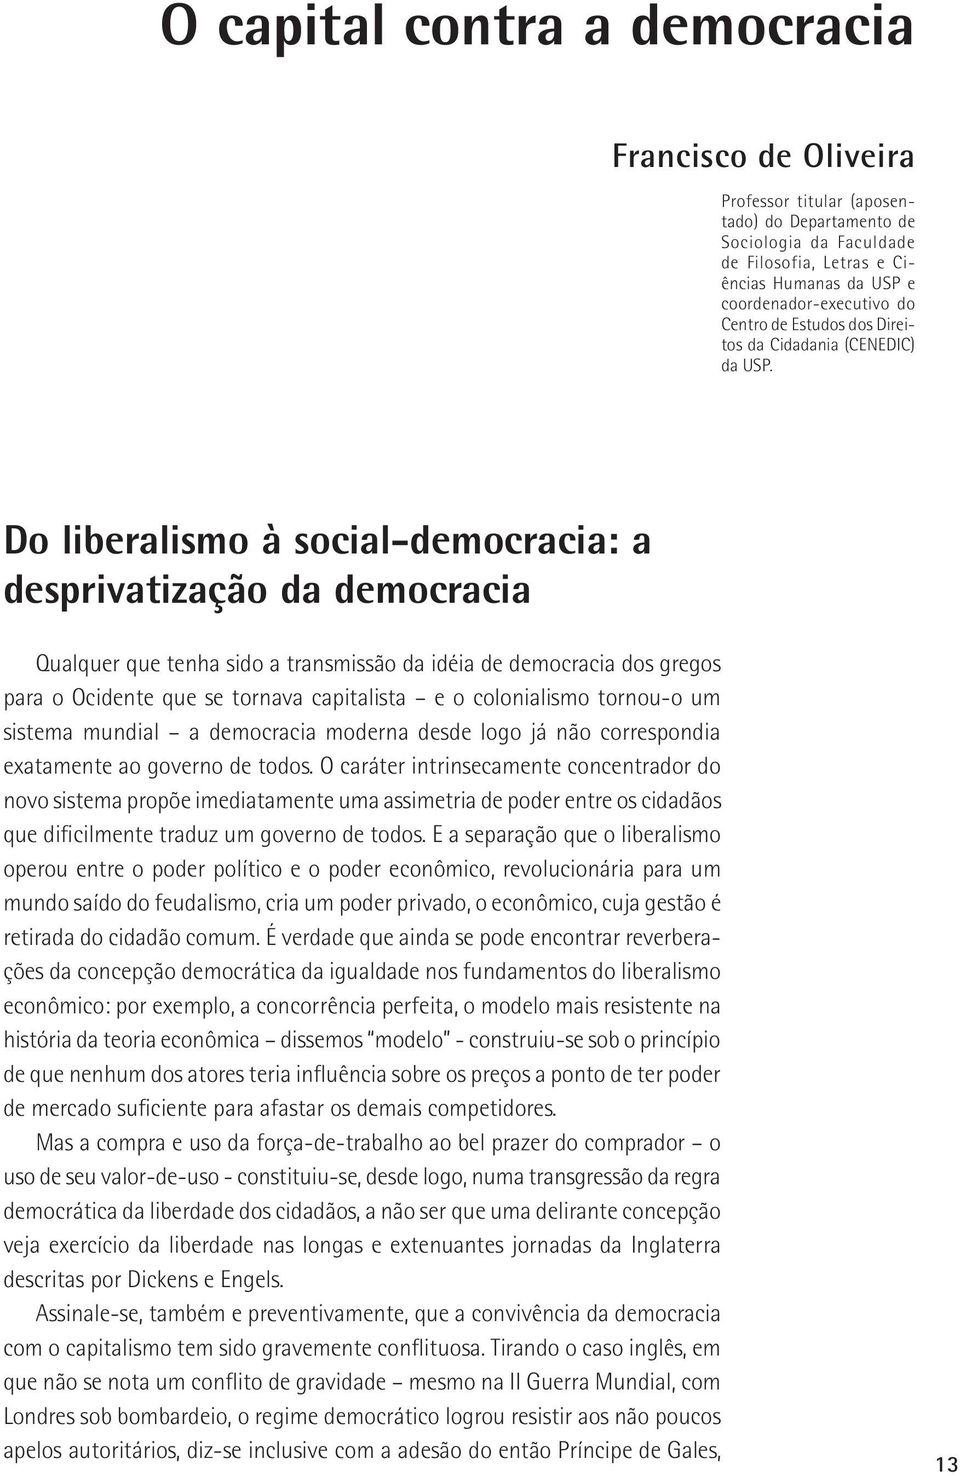 Do liberalismo à social-democracia: a desprivatização da democracia Qualquer que tenha sido a transmissão da idéia de democracia dos gregos para o Ocidente que se tornava capitalista e o colonialismo